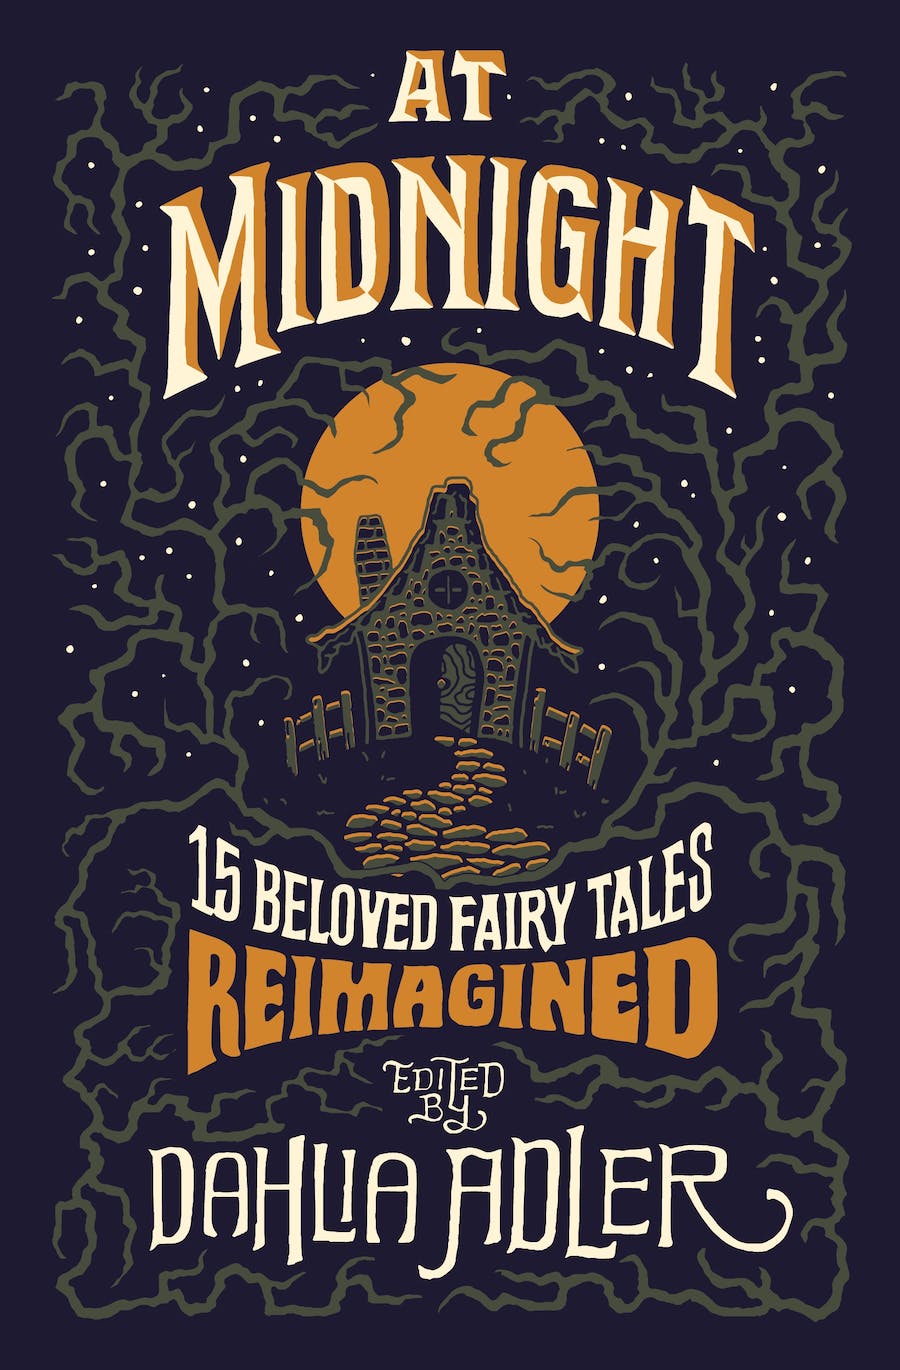 At Midnight edited by Dahlia Adler